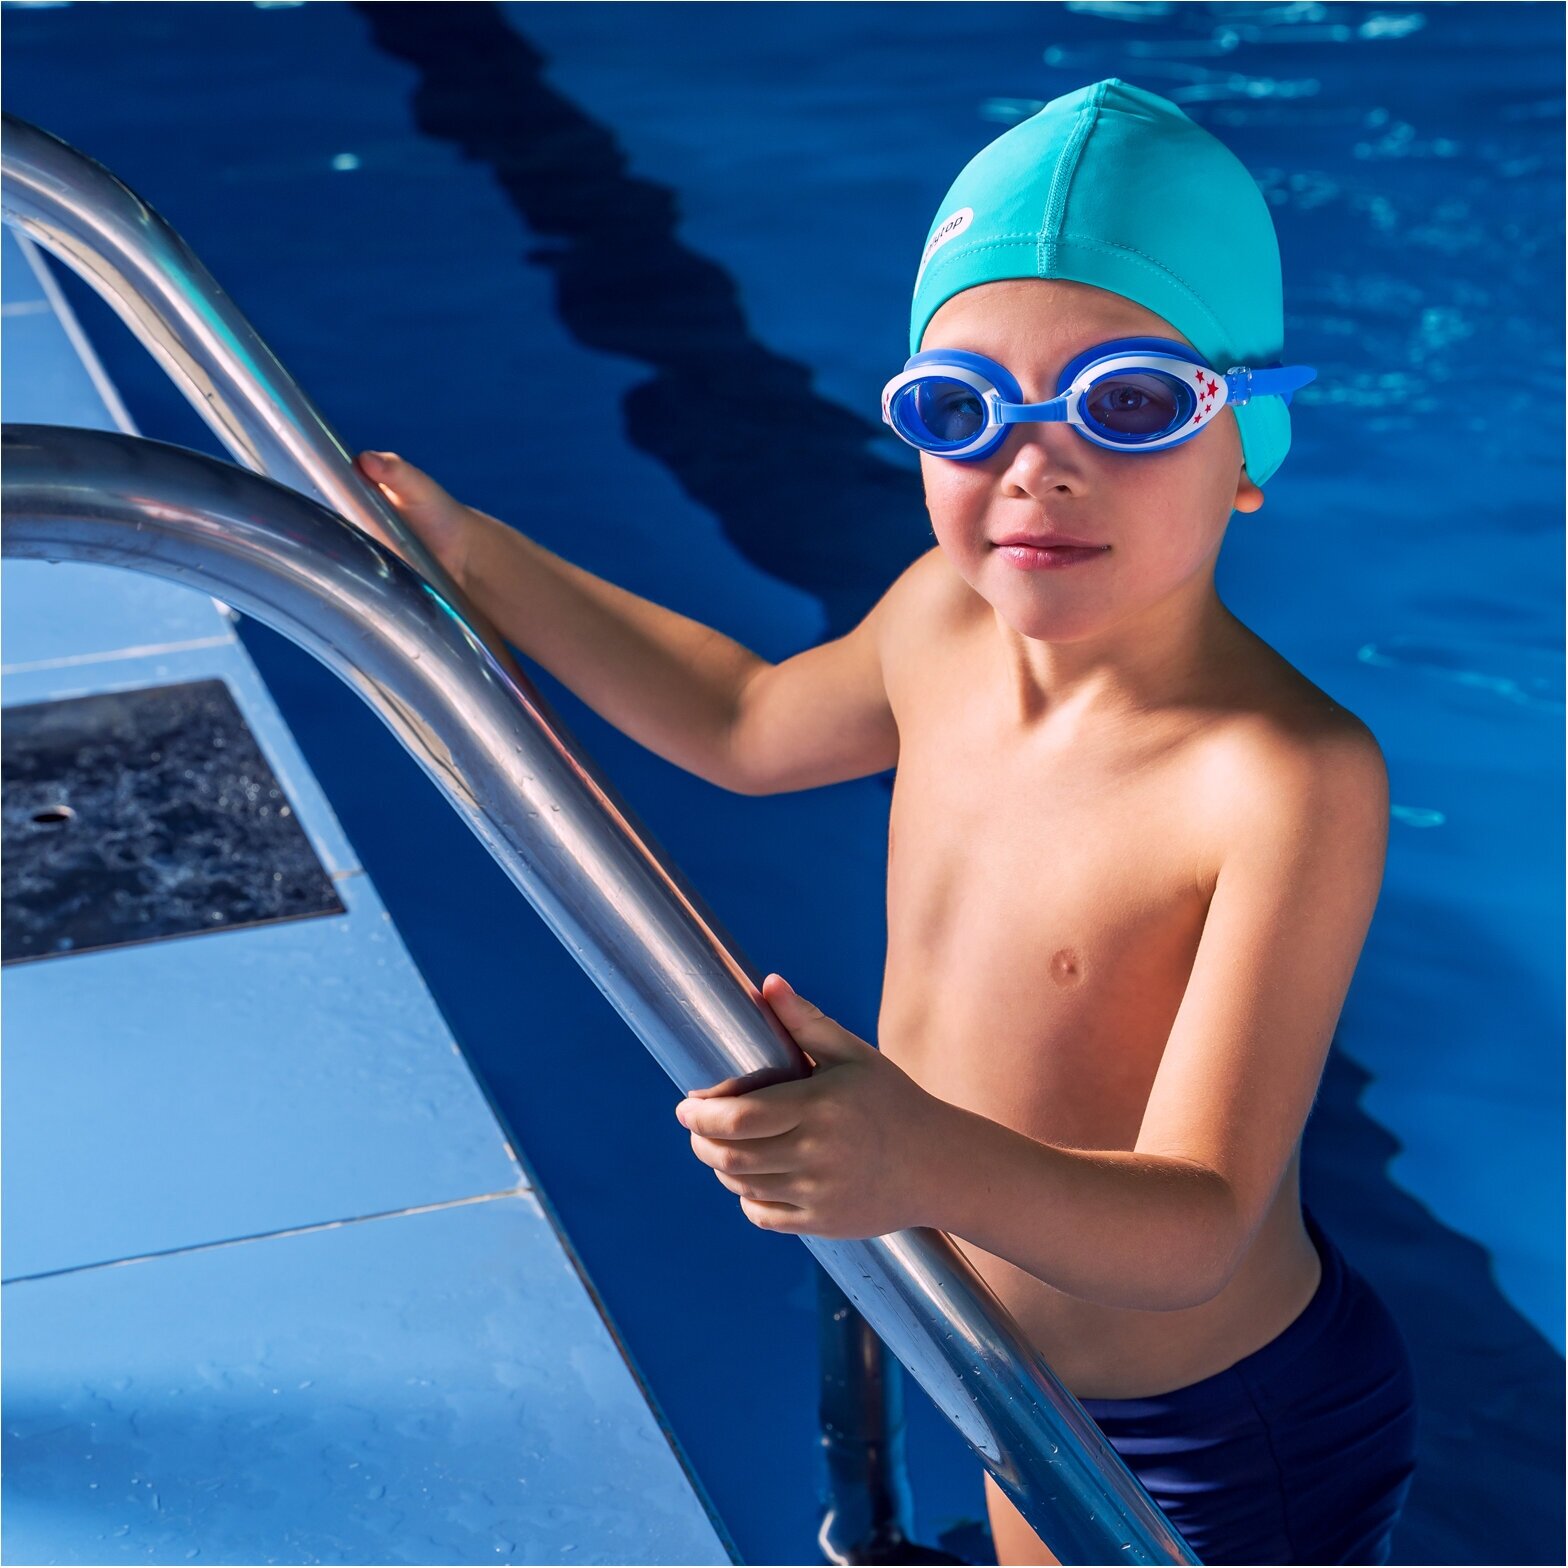 Очки ONLYTOP, для плавания, детские + беруши, цвет голубой с белой оправой